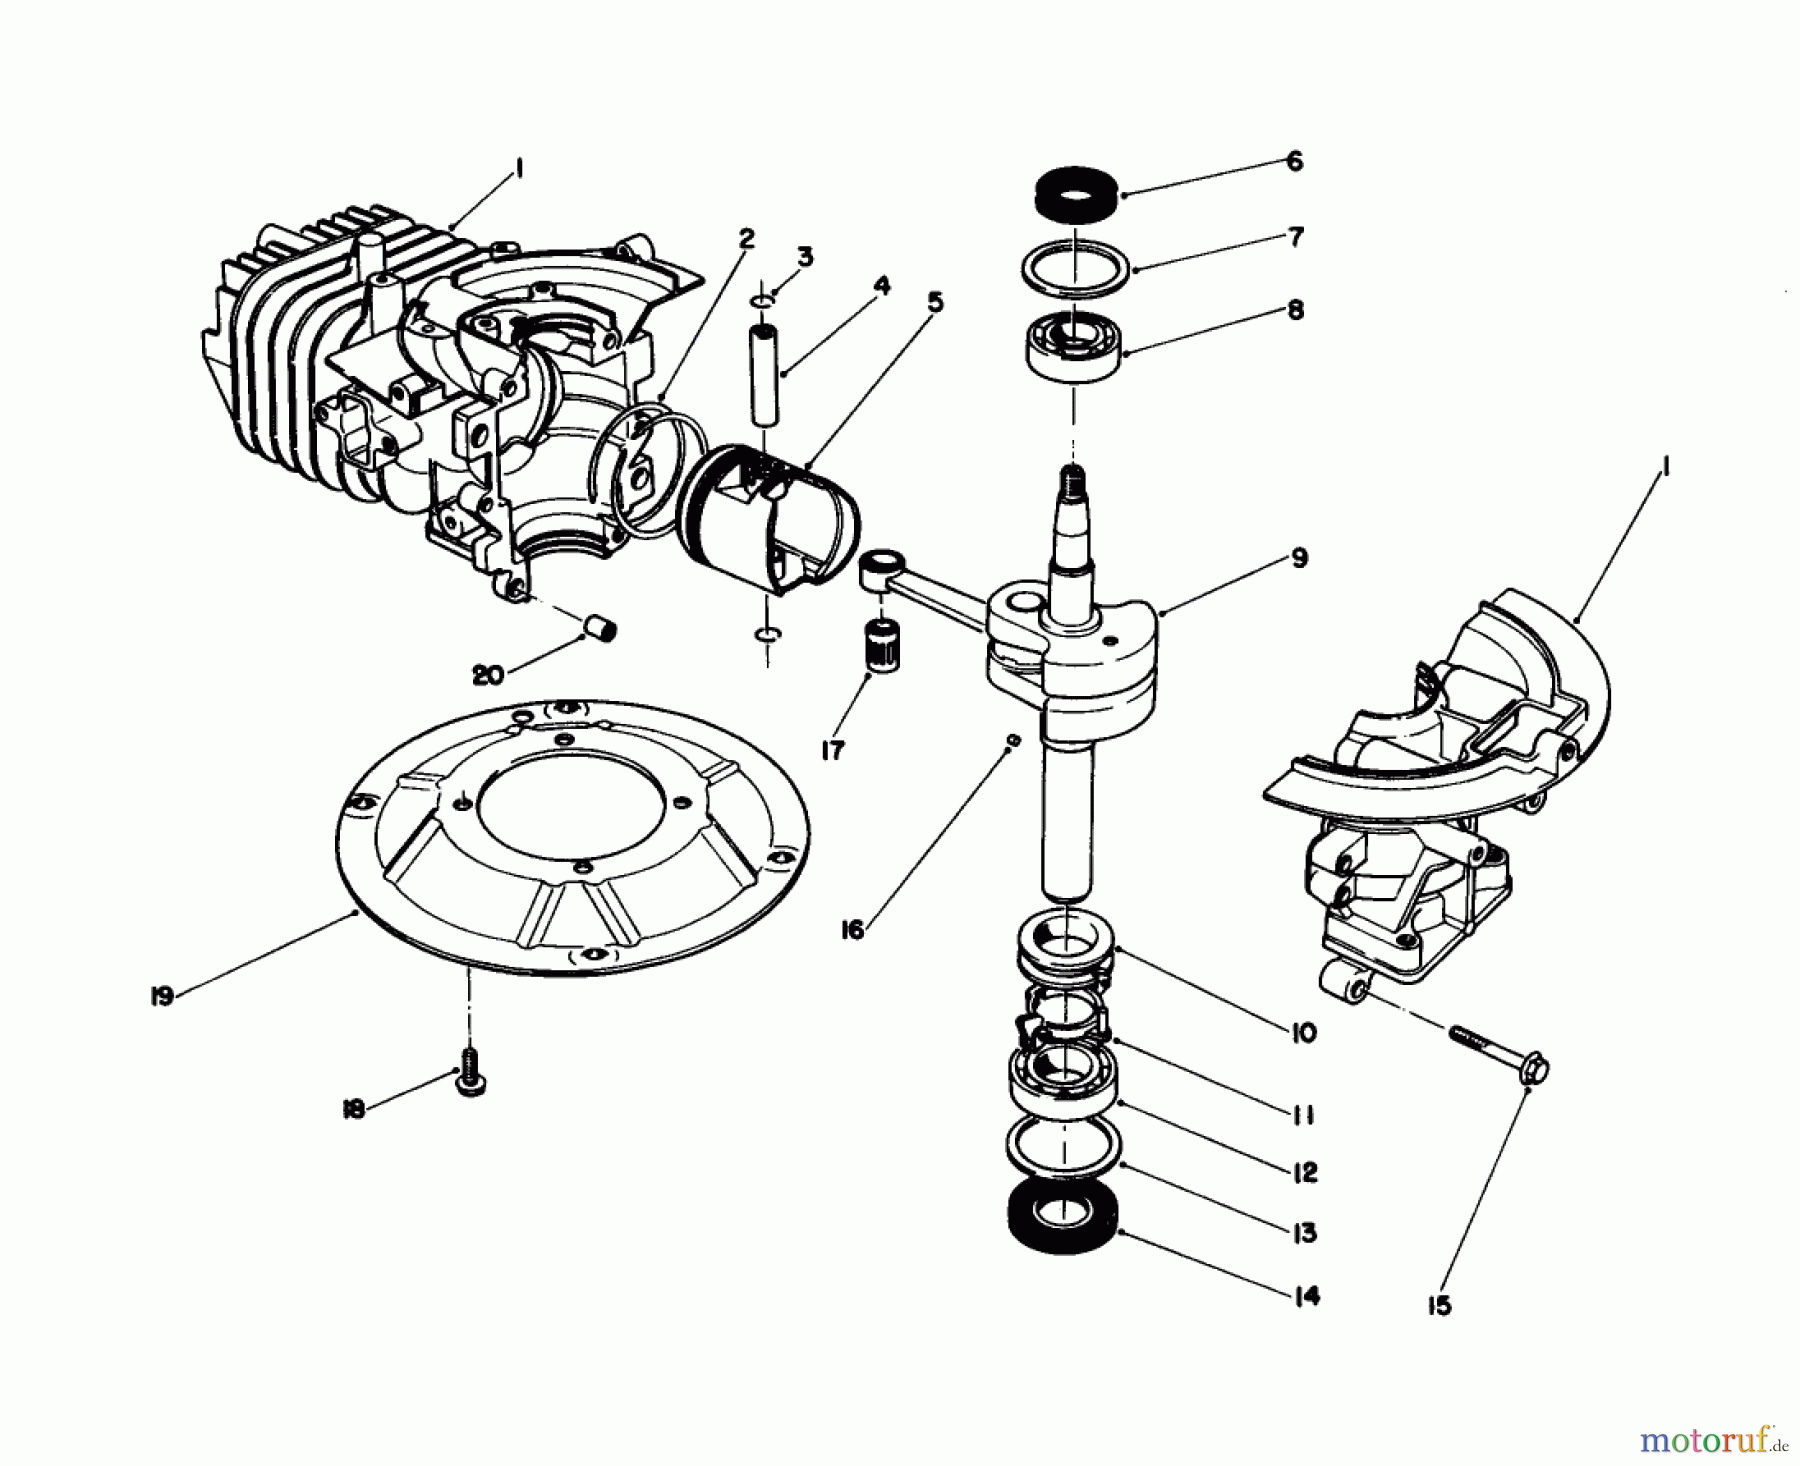  Toro Neu Mowers, Walk-Behind Seite 1 20745C - Toro Lawnmower, 1988 (8000001-8999999) CRANKSHAFT ASSEMBLY (ENGINE NO. 47PH7) (ENGINE NO. 47PG6)